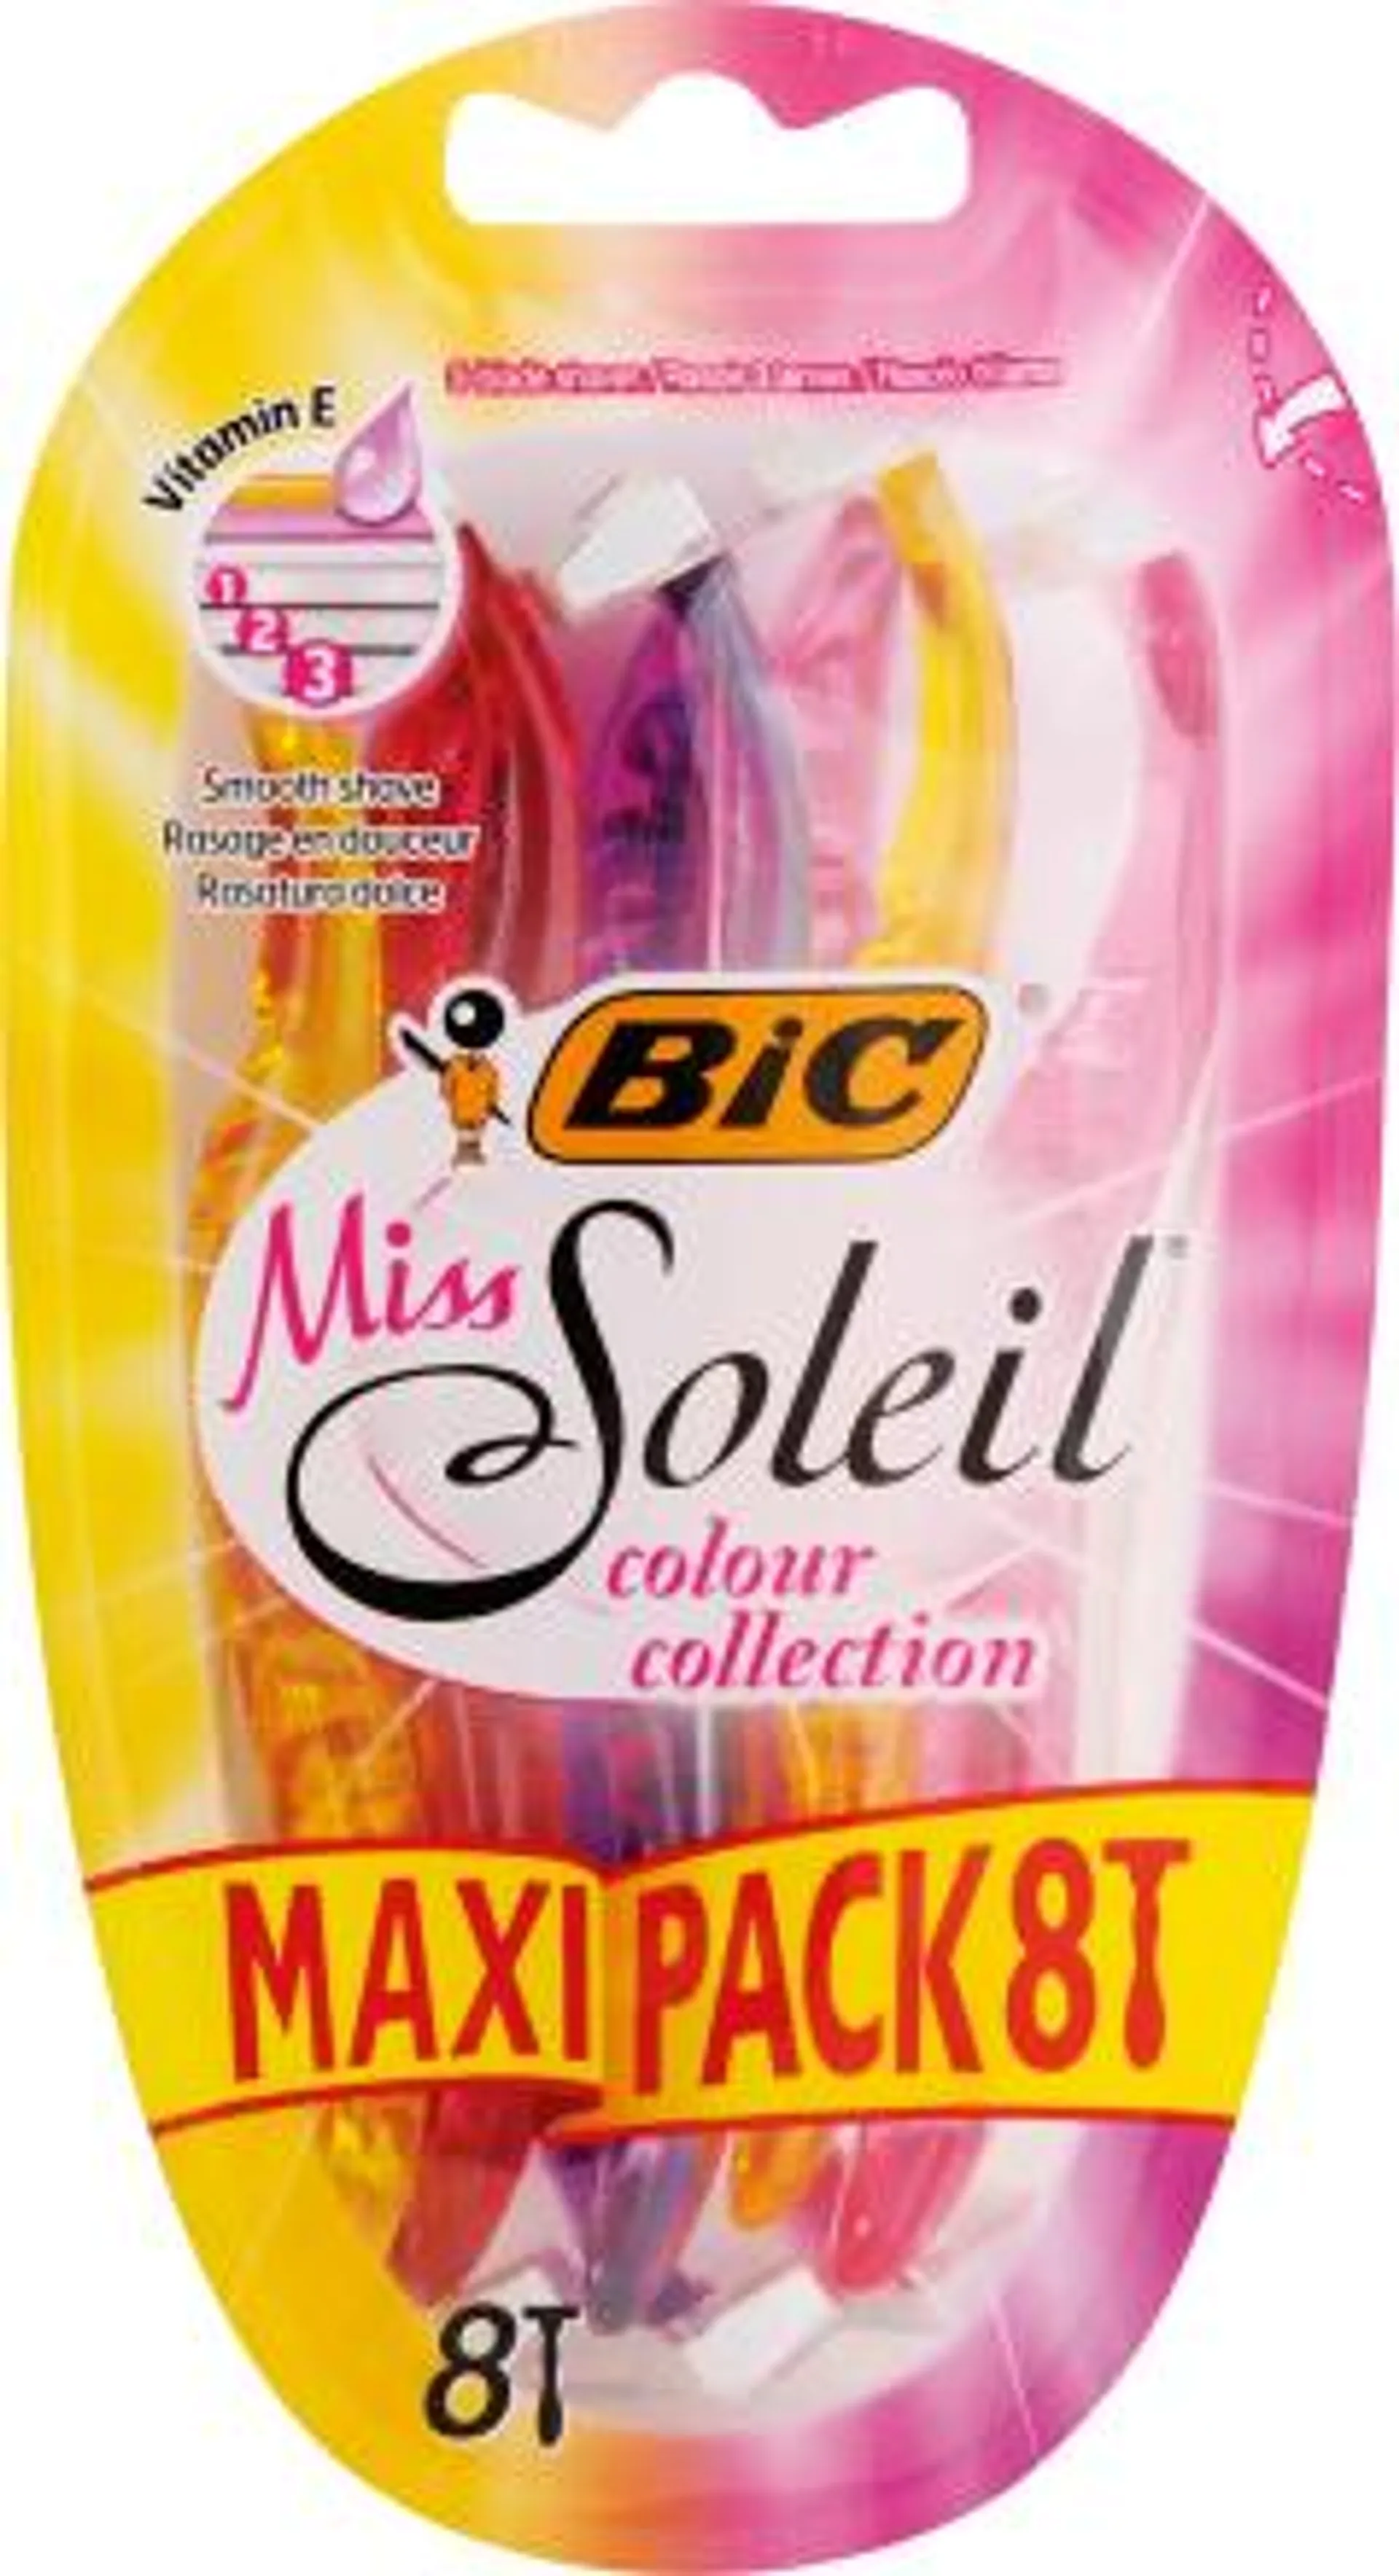 Dámsky jednorazový holiaci strojček Miss Soleil colour collection, 8 ks